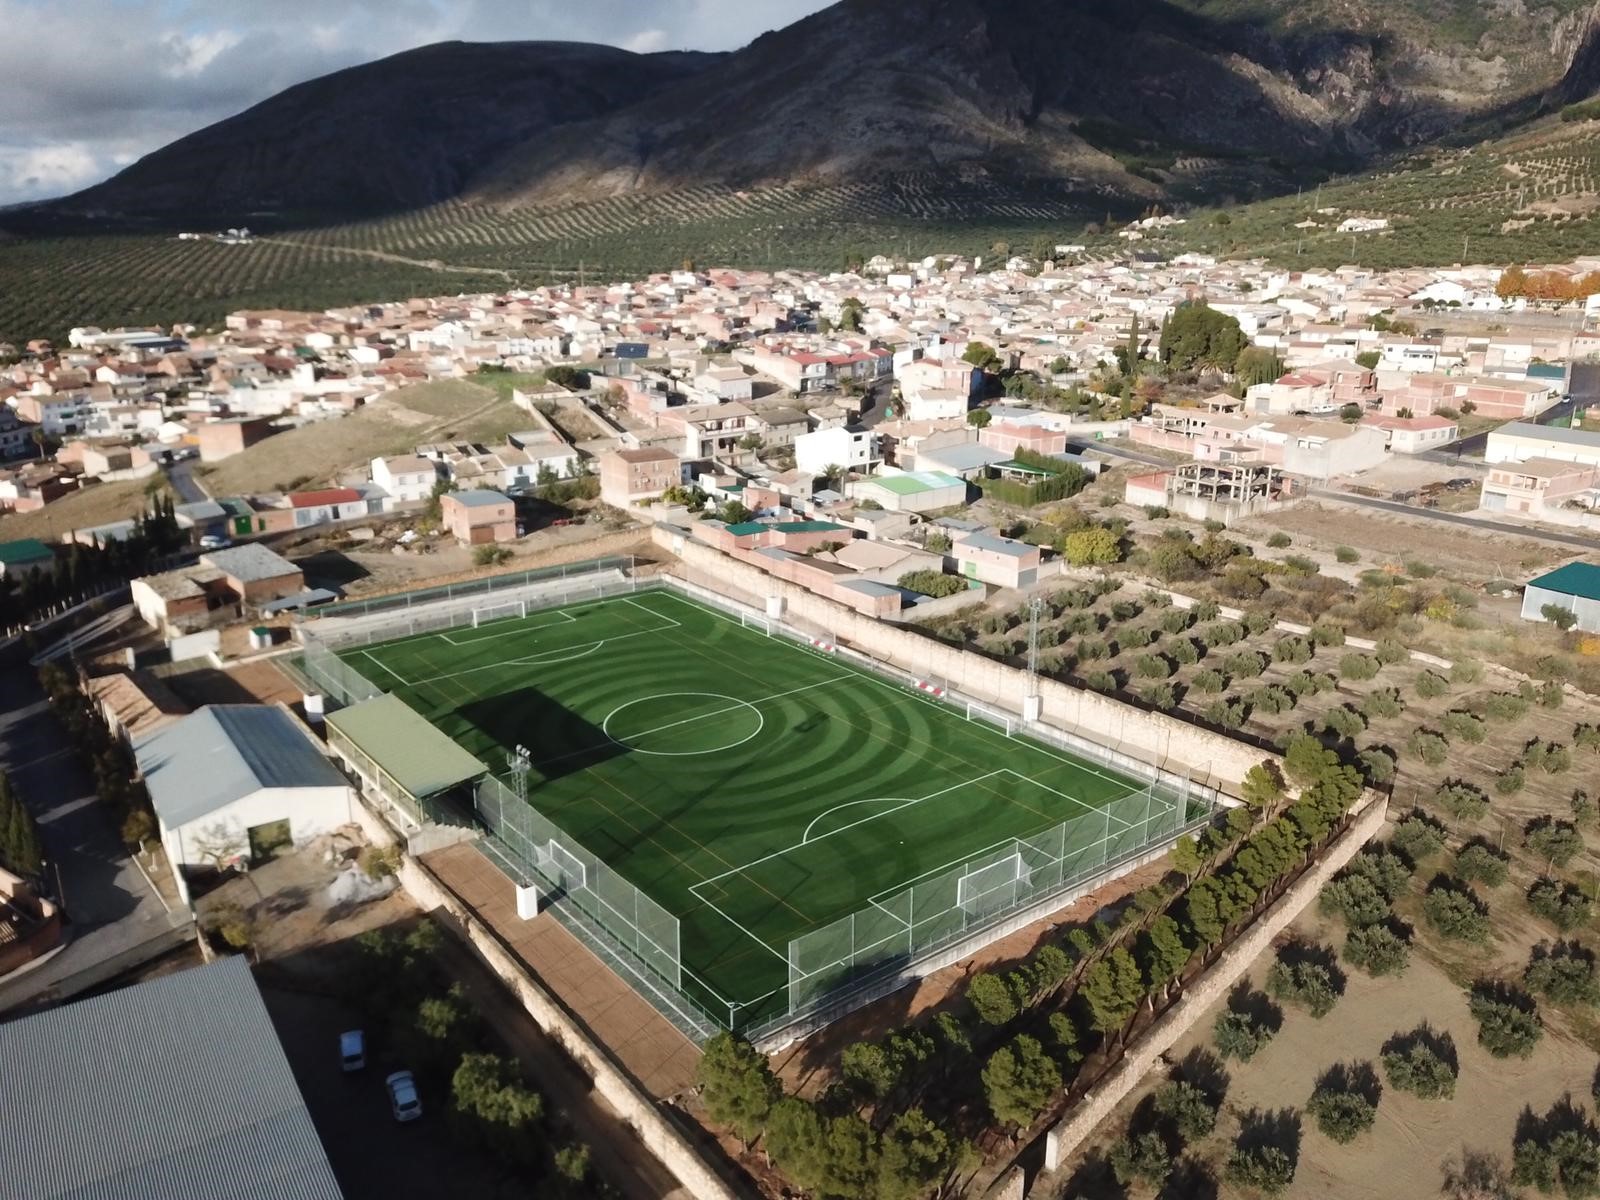 Campo de Fútbol Vicente Molina Muñoz, Jaén Image